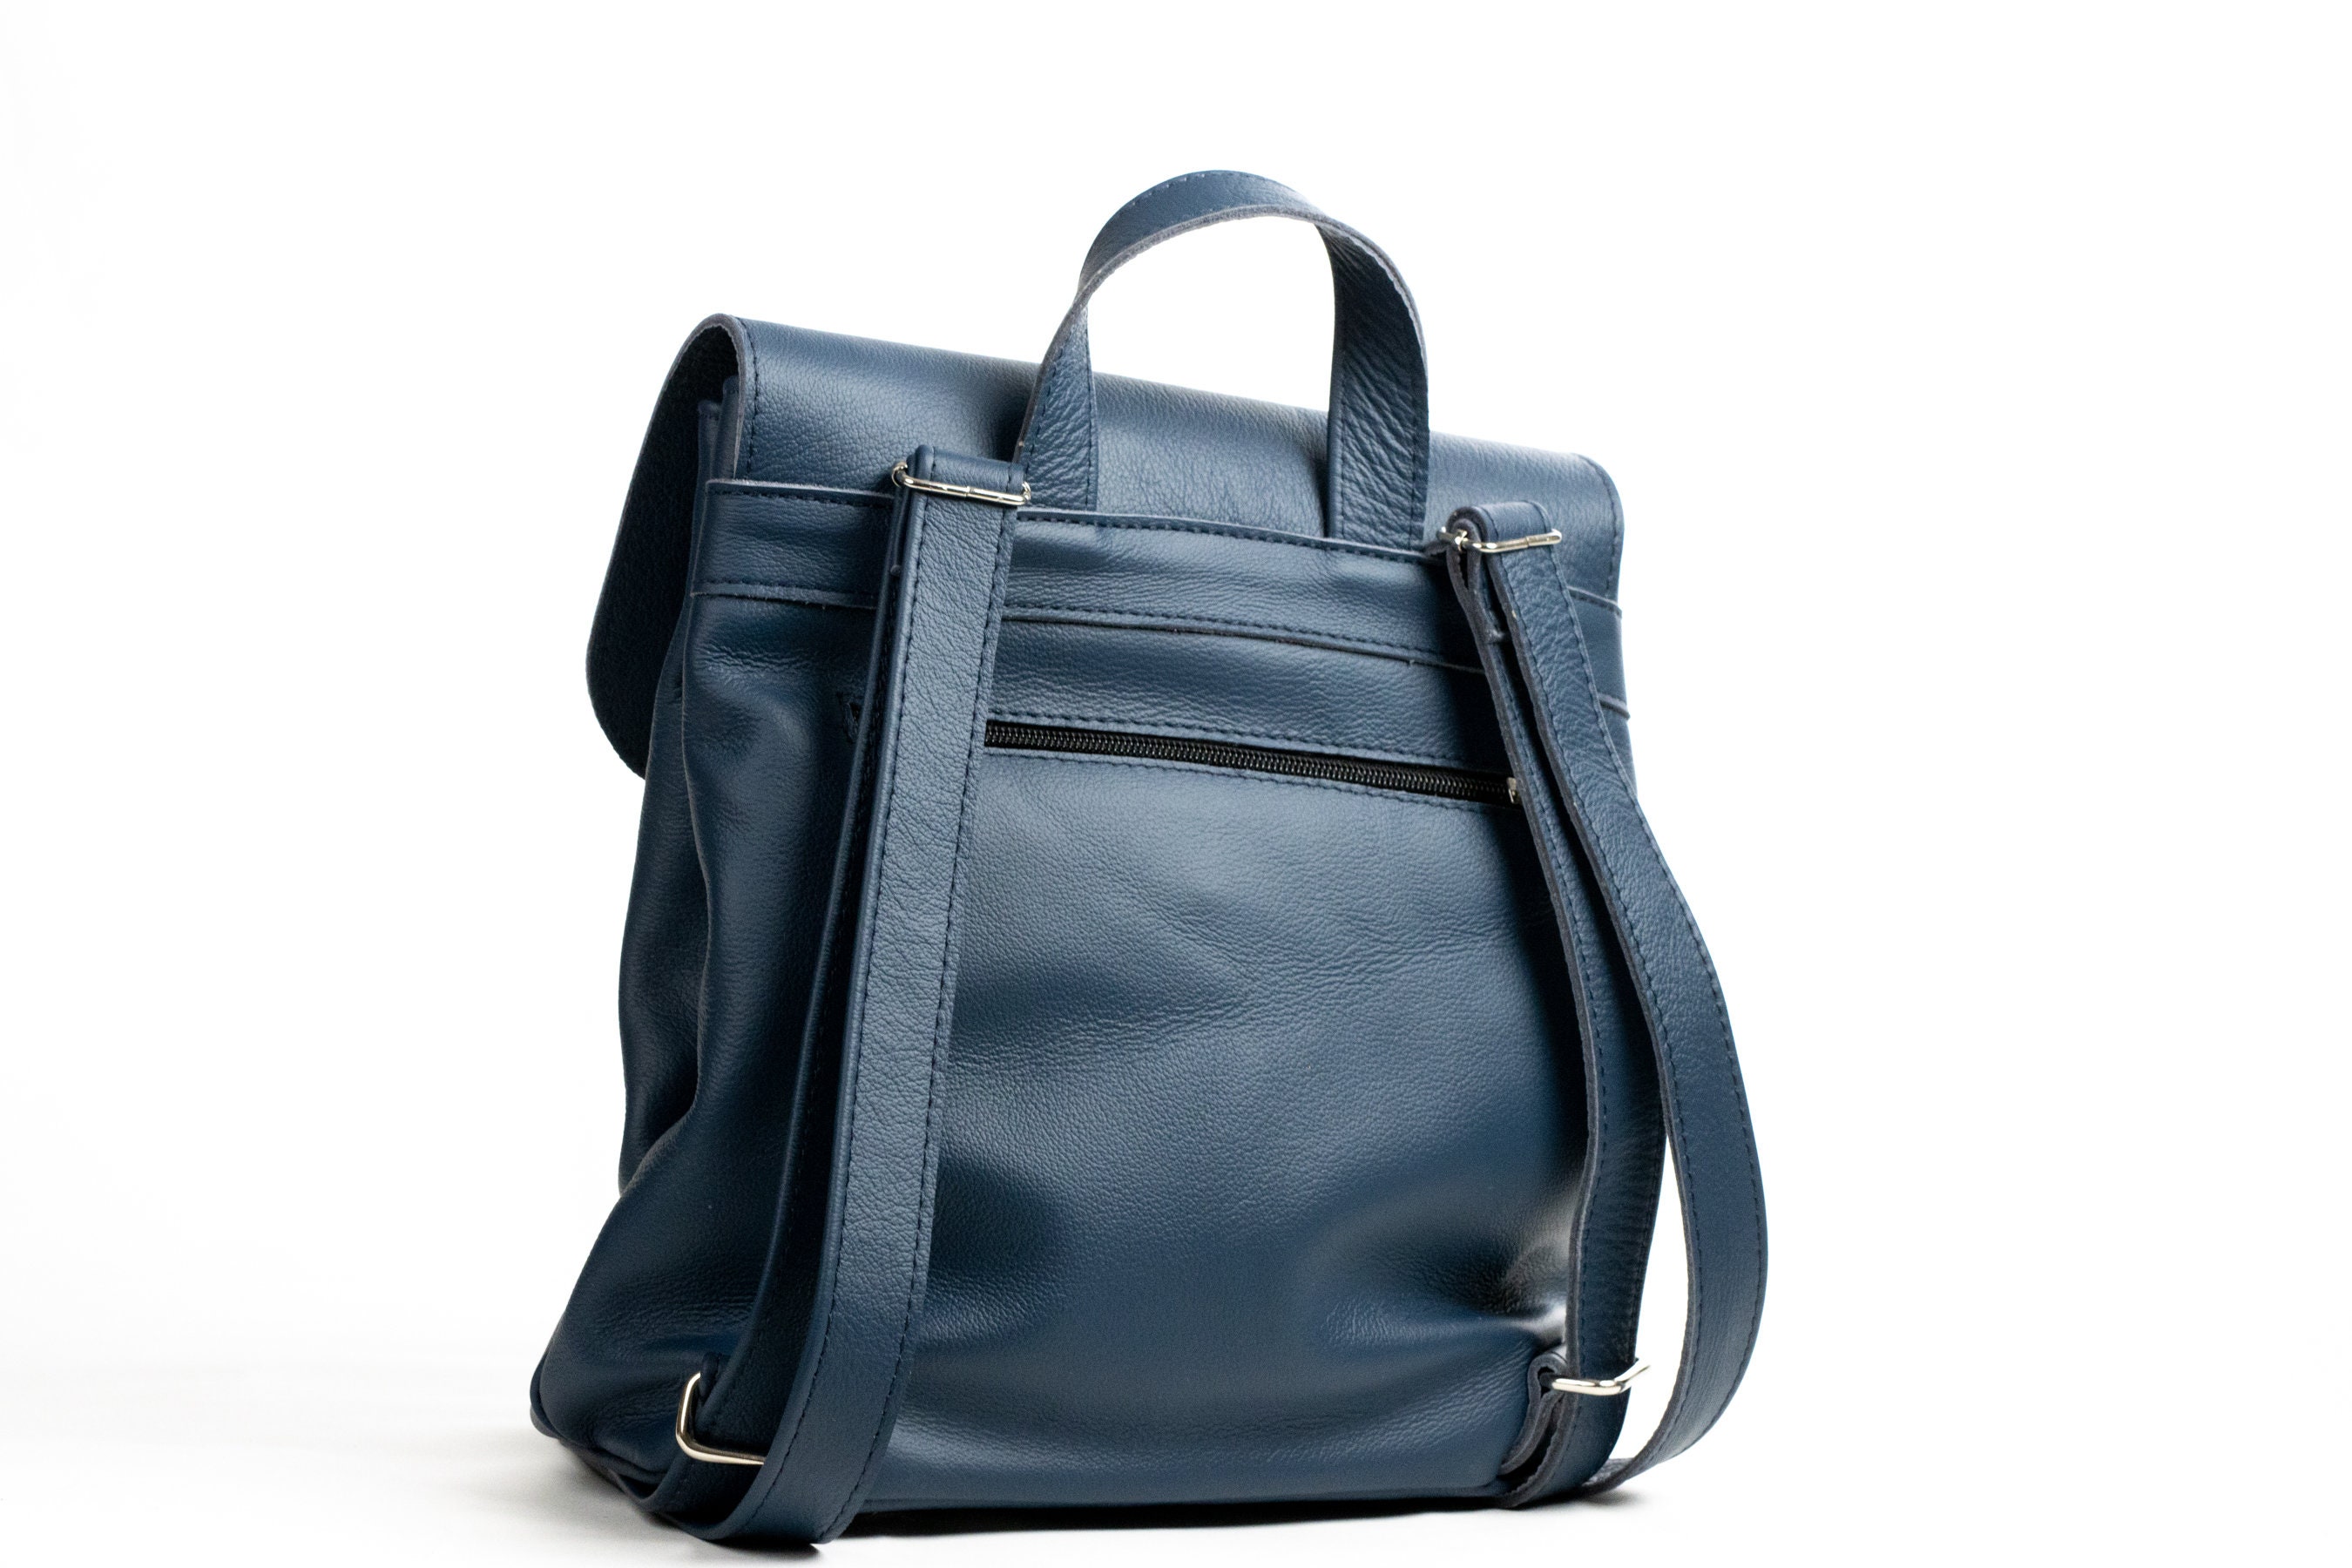 NWT JG Hook blue leather purse shoulder bag | eBay